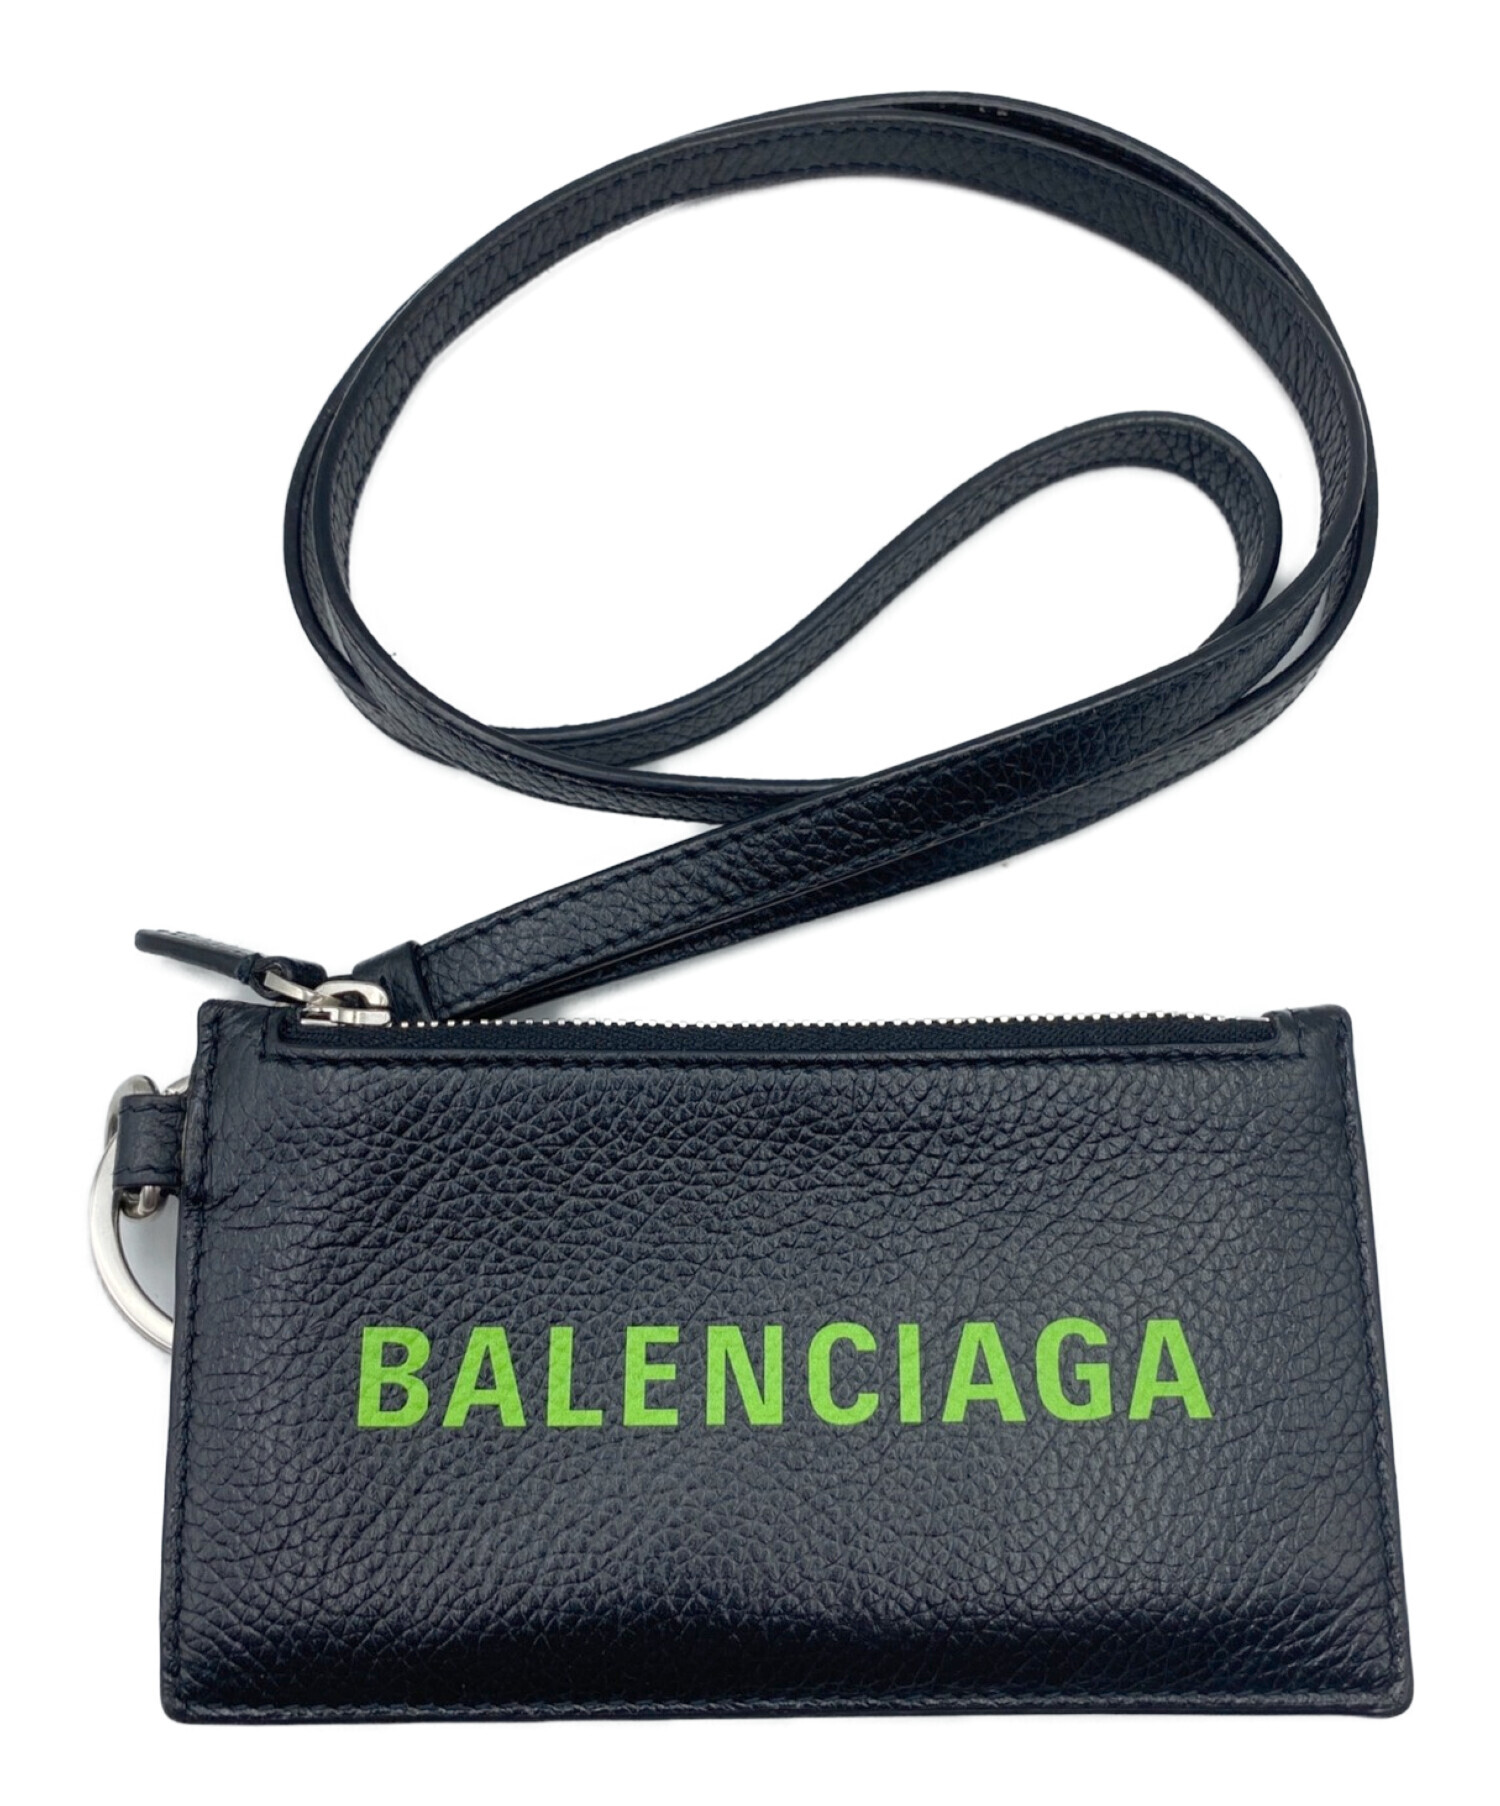 BALENCIAGA (バレンシアガ) ネックストラップカードケース ブラック